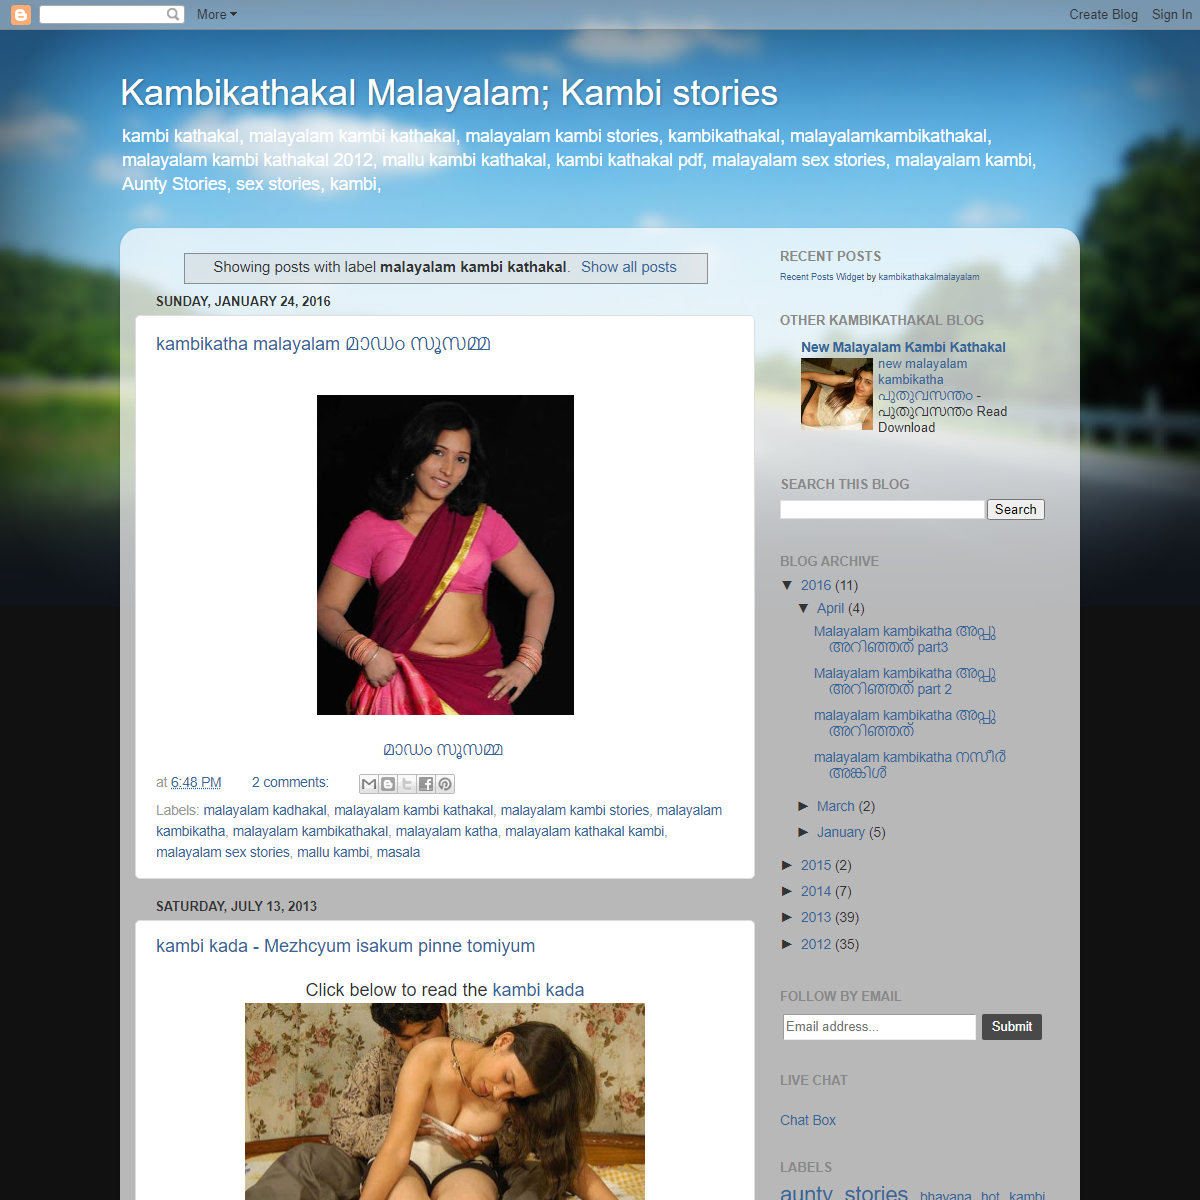 A complete backup of https://kambikathakalmalayalam.blogspot.com/search/label/malayalam%20kambi%20kathakal